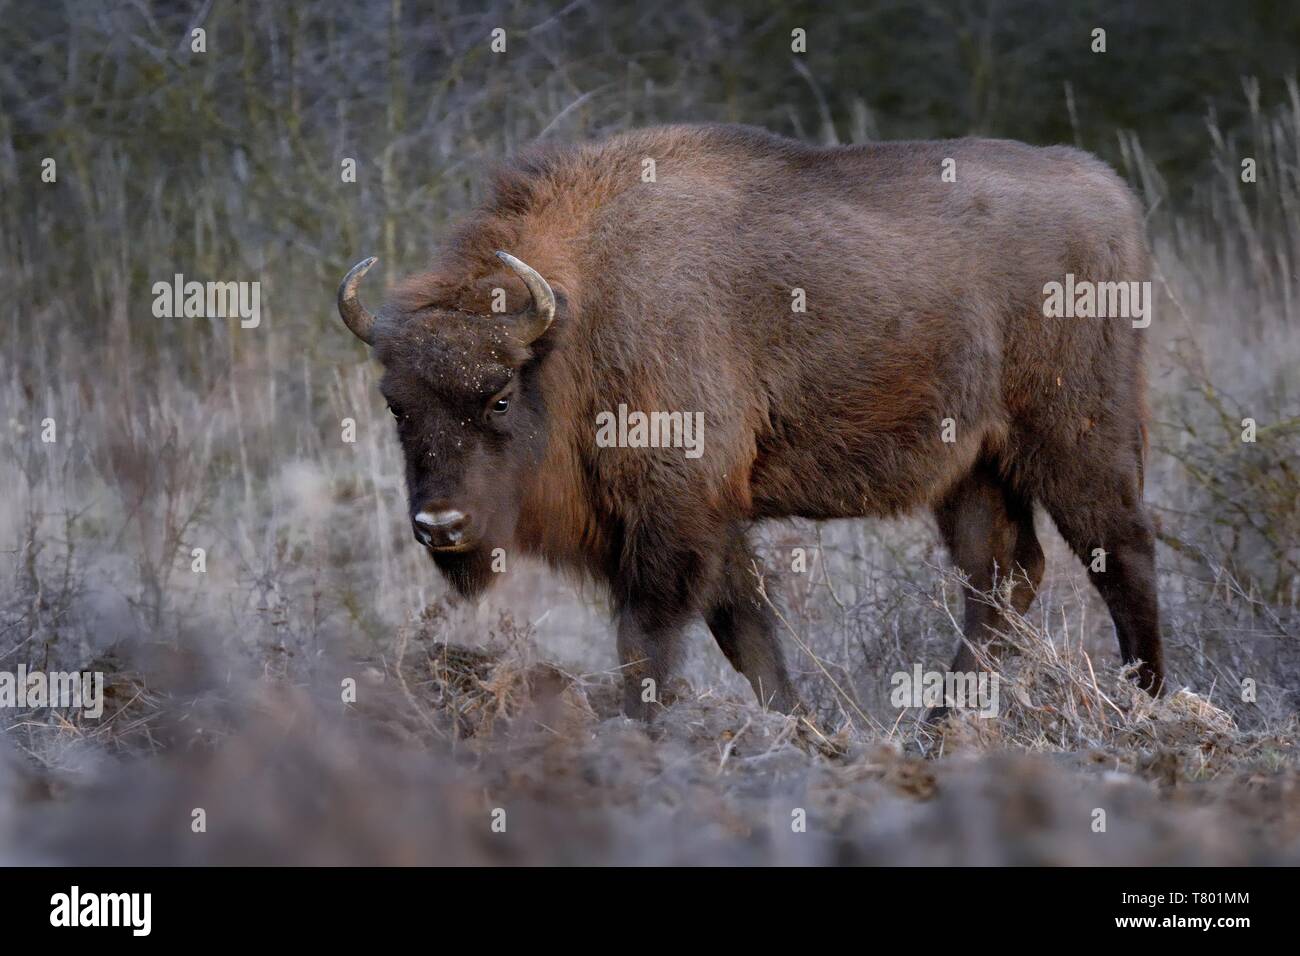 Europäische Bison - Bison bonasus in der Tschechischen republik, Milovice. Fütterung auf der Wiese und Savanne. Stockfoto